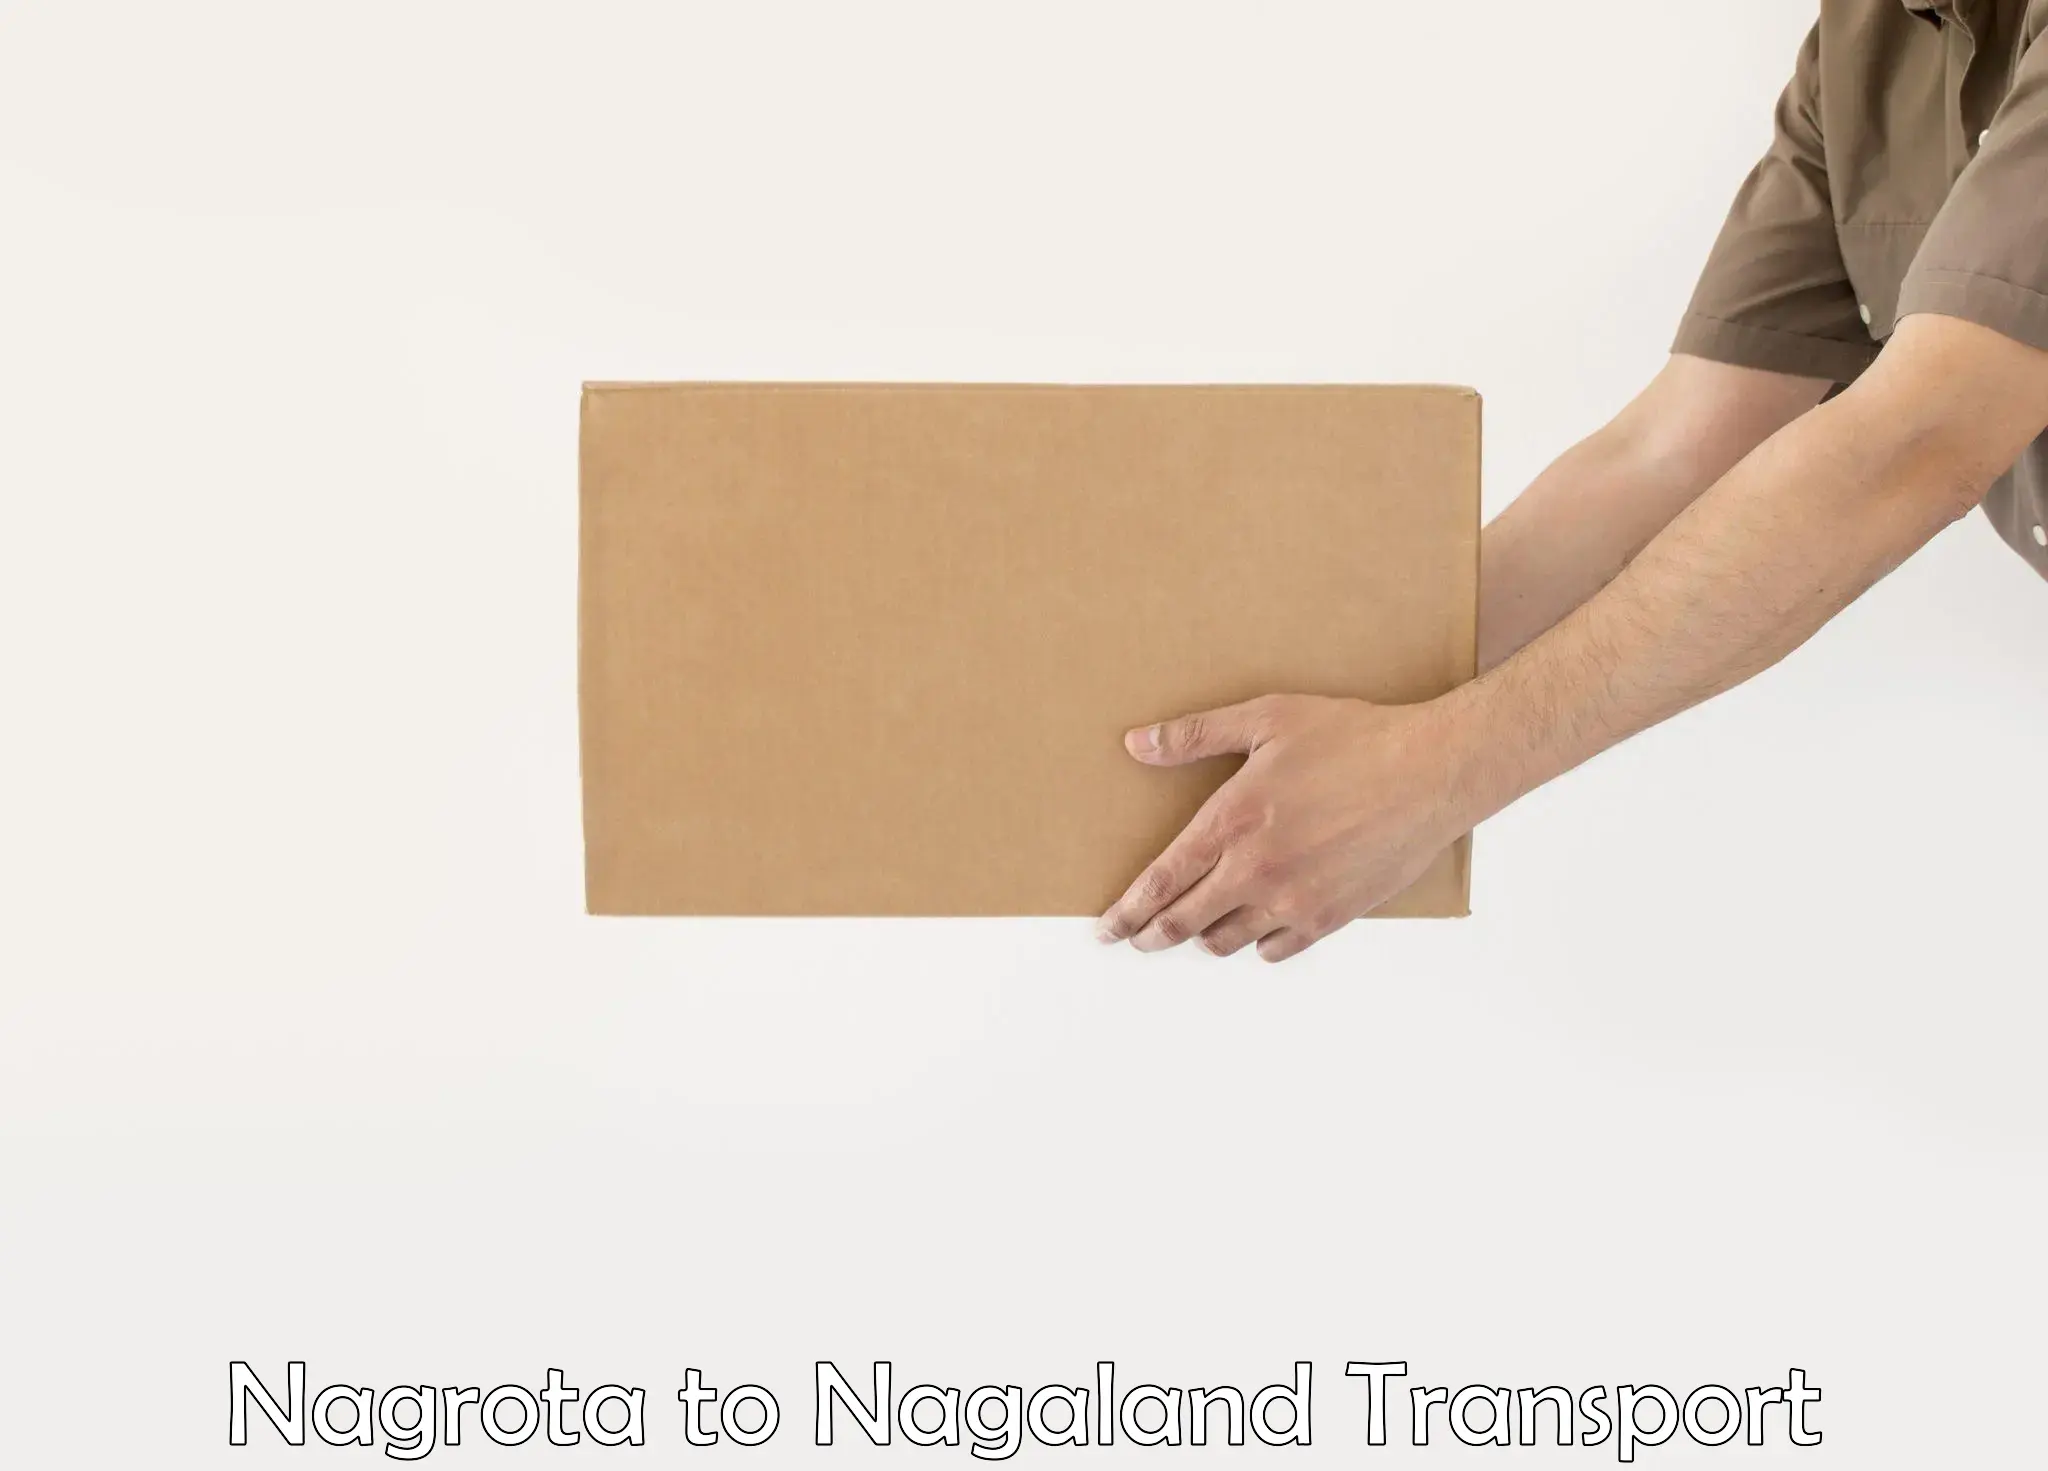 Online transport service Nagrota to NIT Nagaland